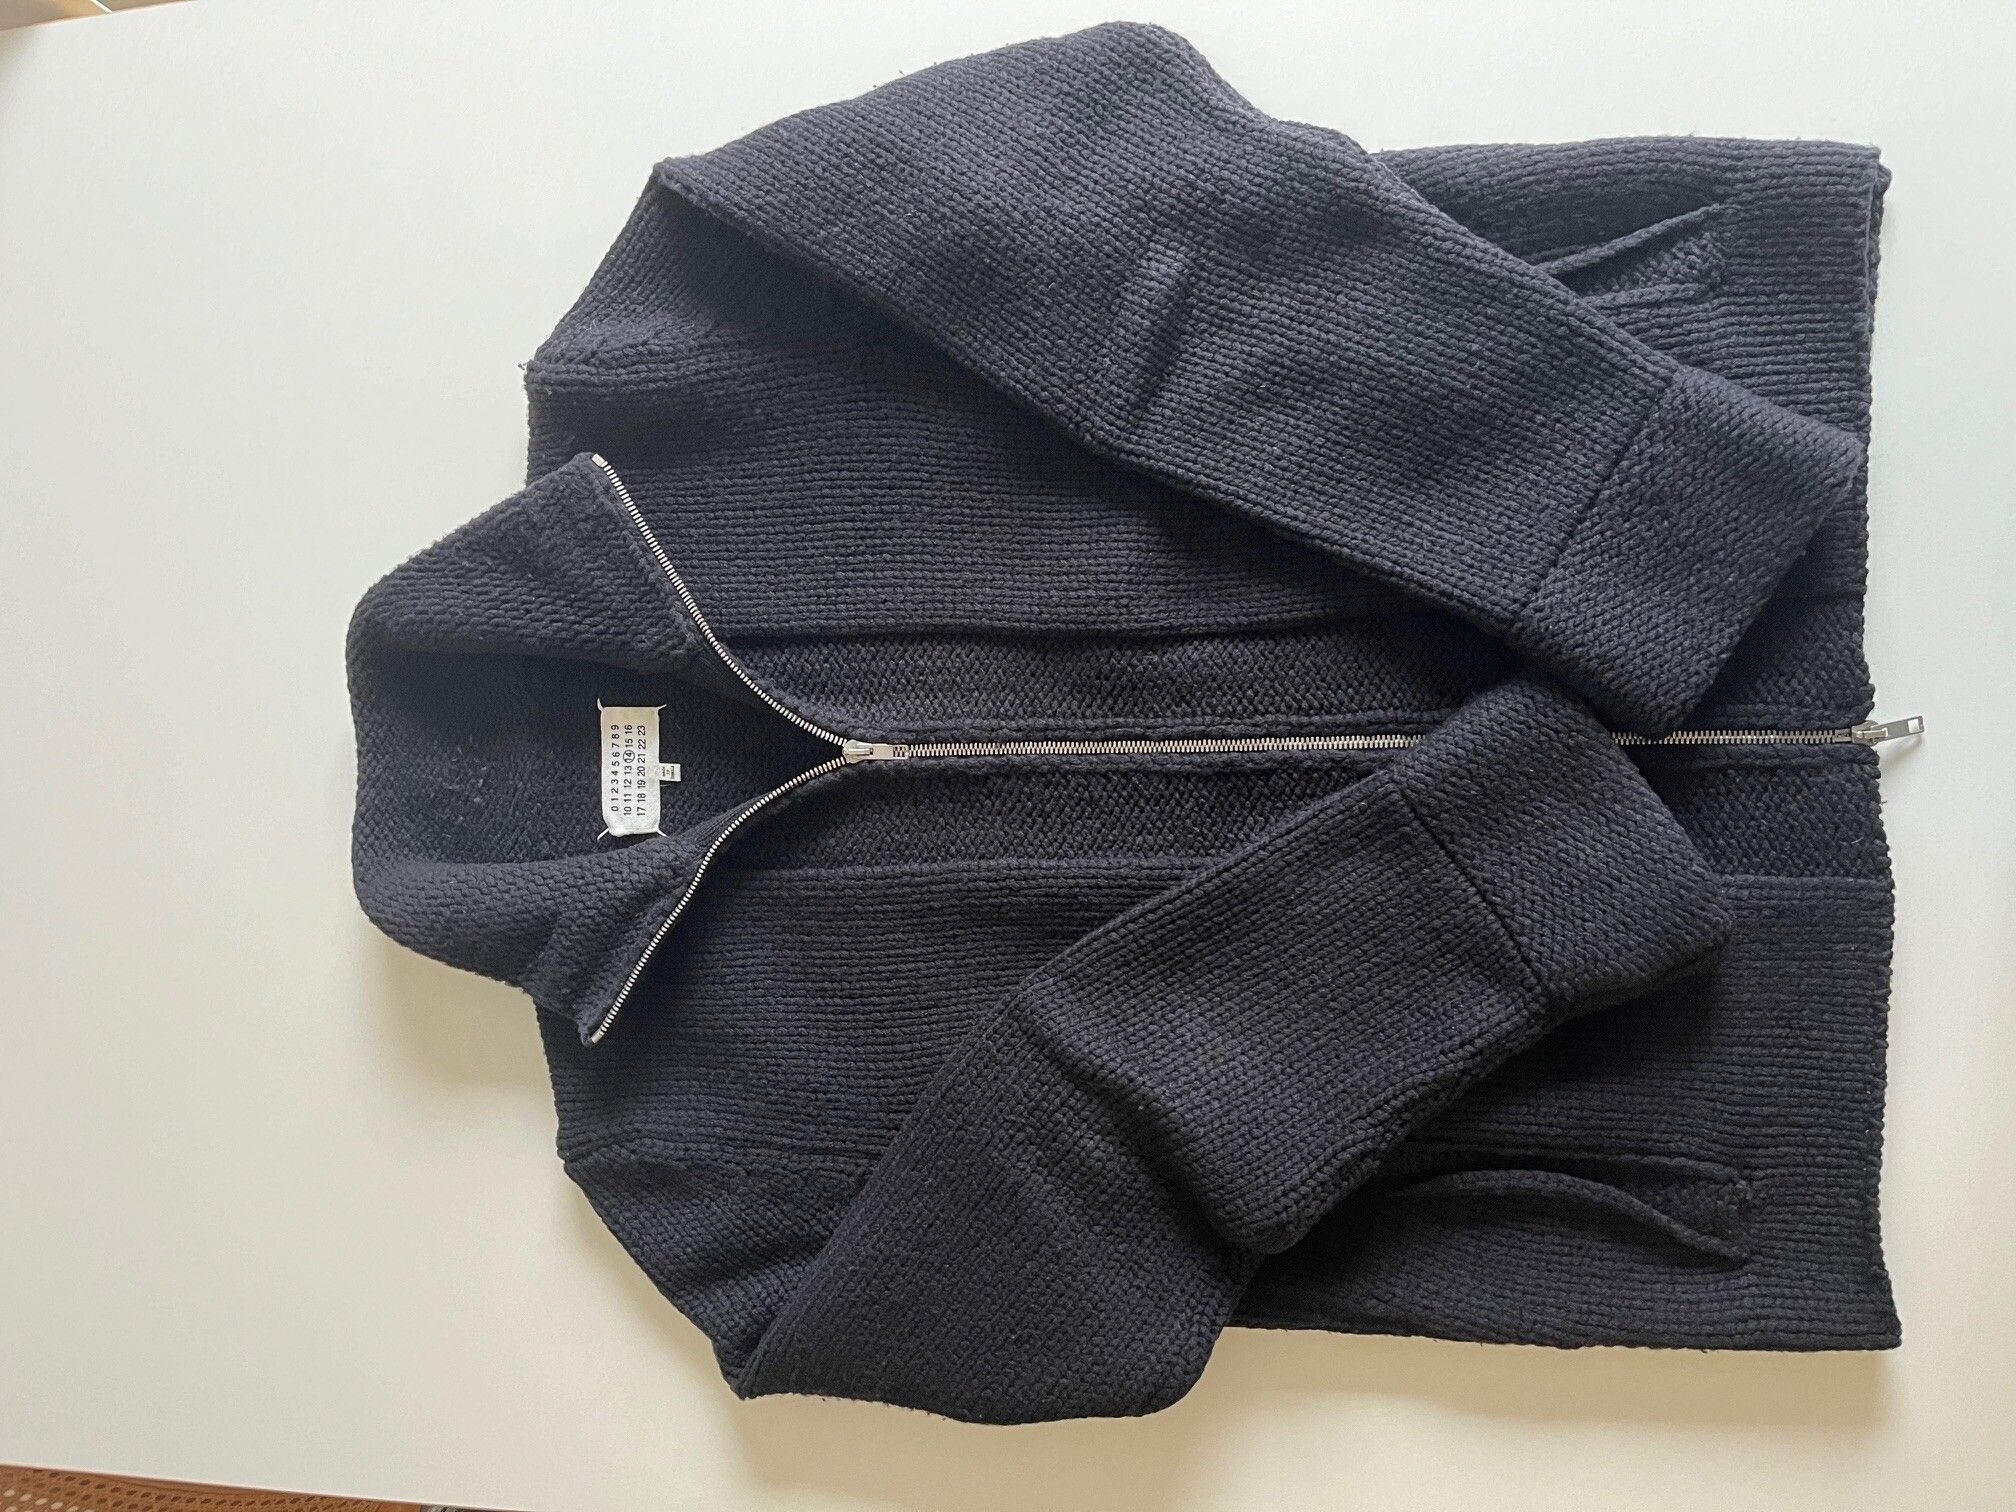 Maison Margiela Knitwear with Zipper | Grailed